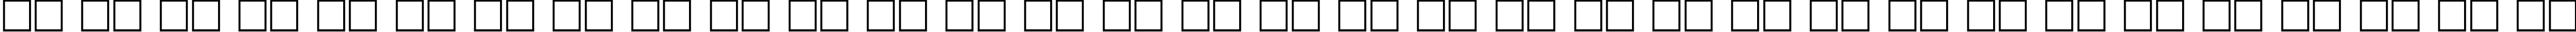 Пример написания русского алфавита шрифтом DG_AachenOutline